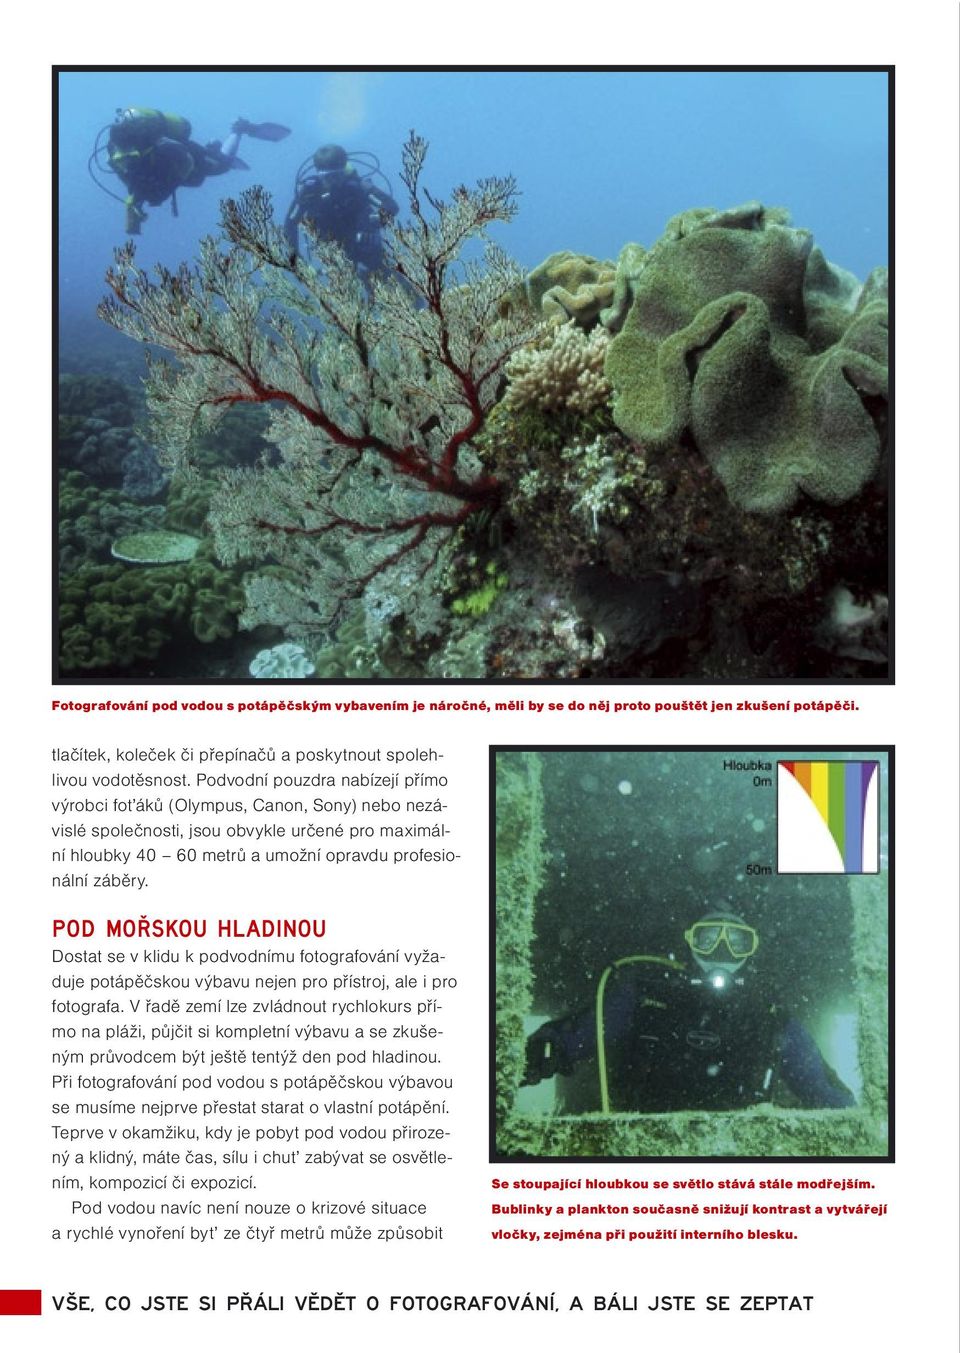 Pod mořskou hladinou Dostat se v klidu k podvodnímu fotografování vyžaduje potápěčskou výbavu nejen pro přístroj, ale i pro fotografa.